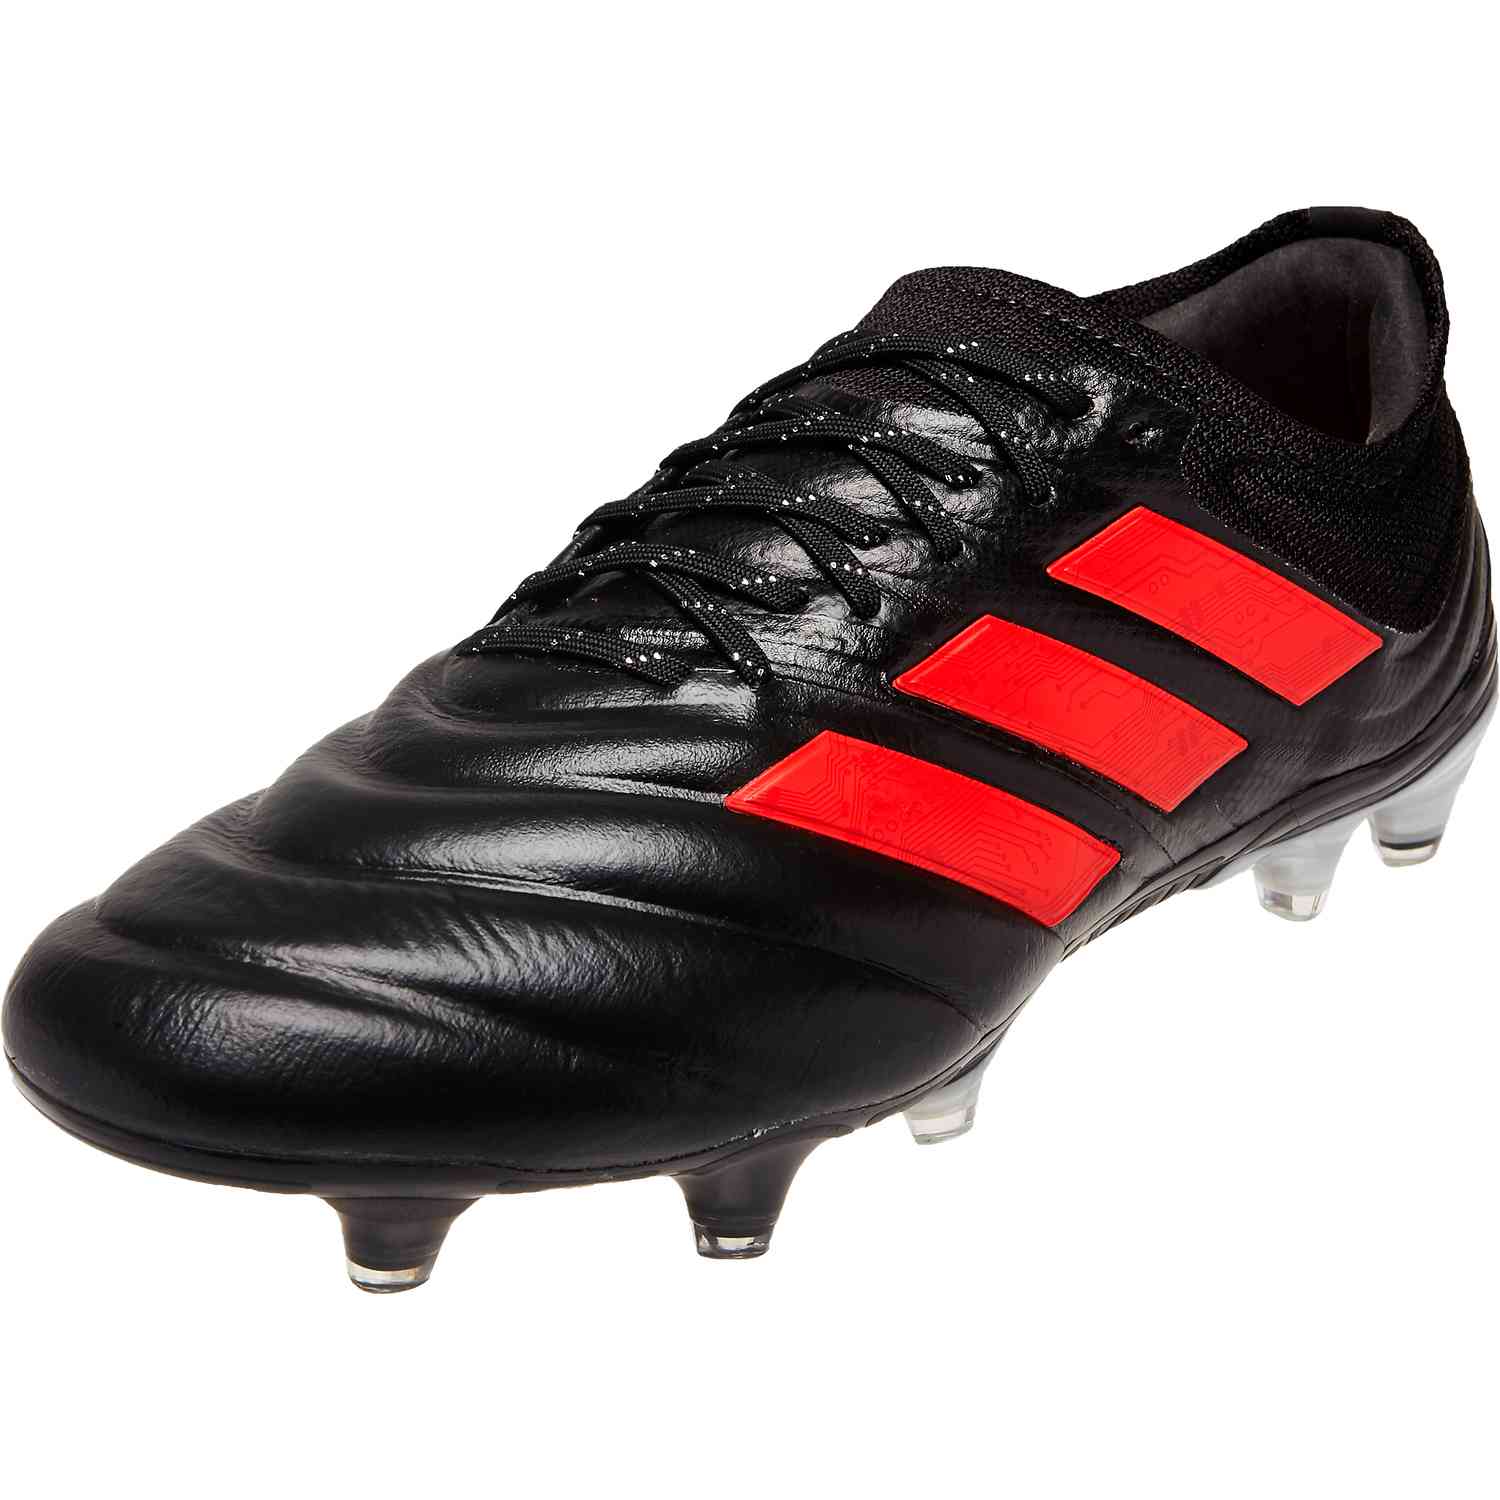 copas soccer shoes